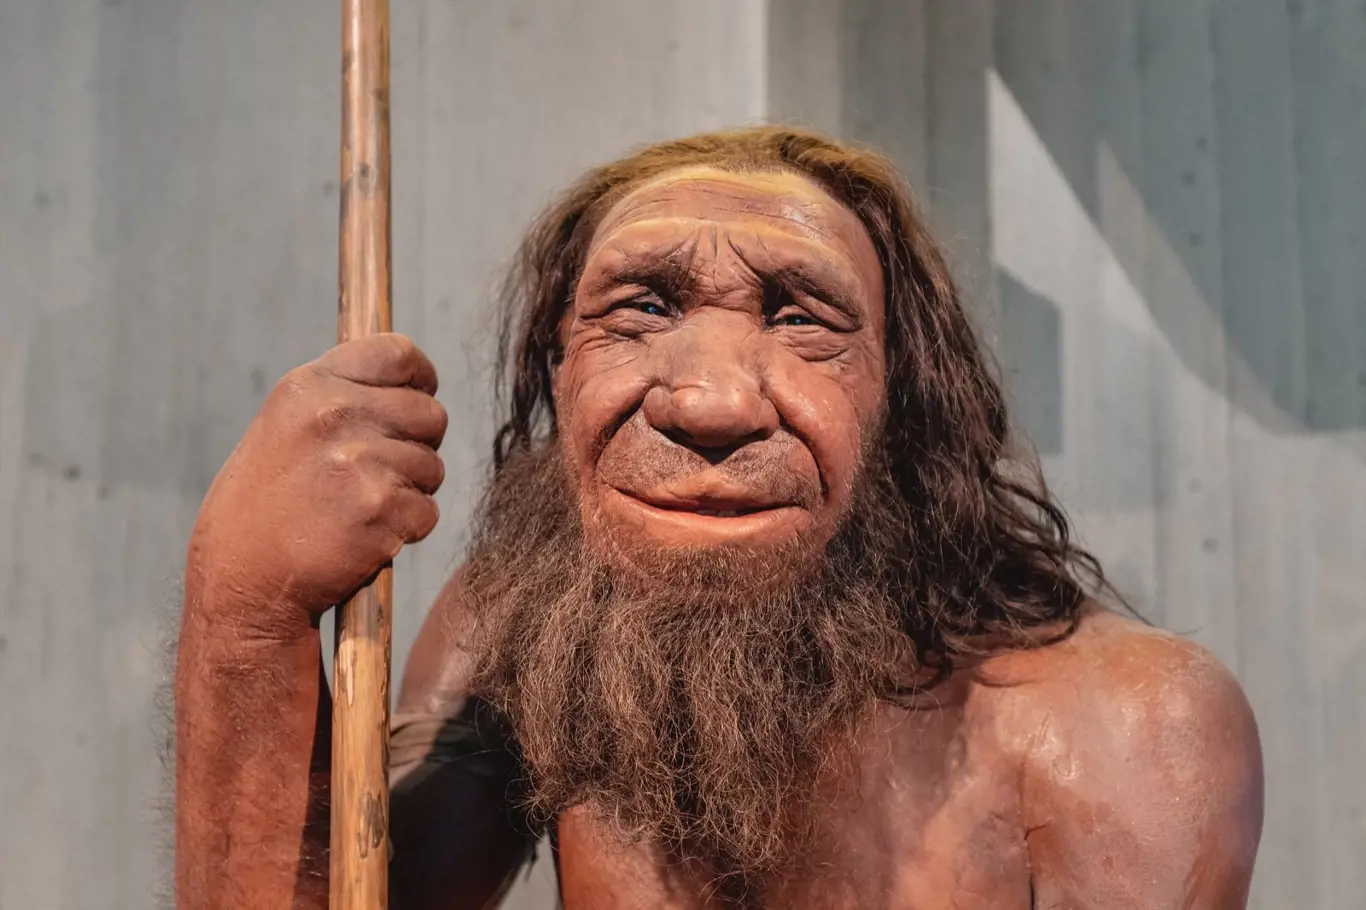 Muzeum neandrtálců, Německo: Detailní vosková figurína neandrtálského člověka s oštěpem v muzeu. Člověk Sapiens antropologie věda a teorie evoluce